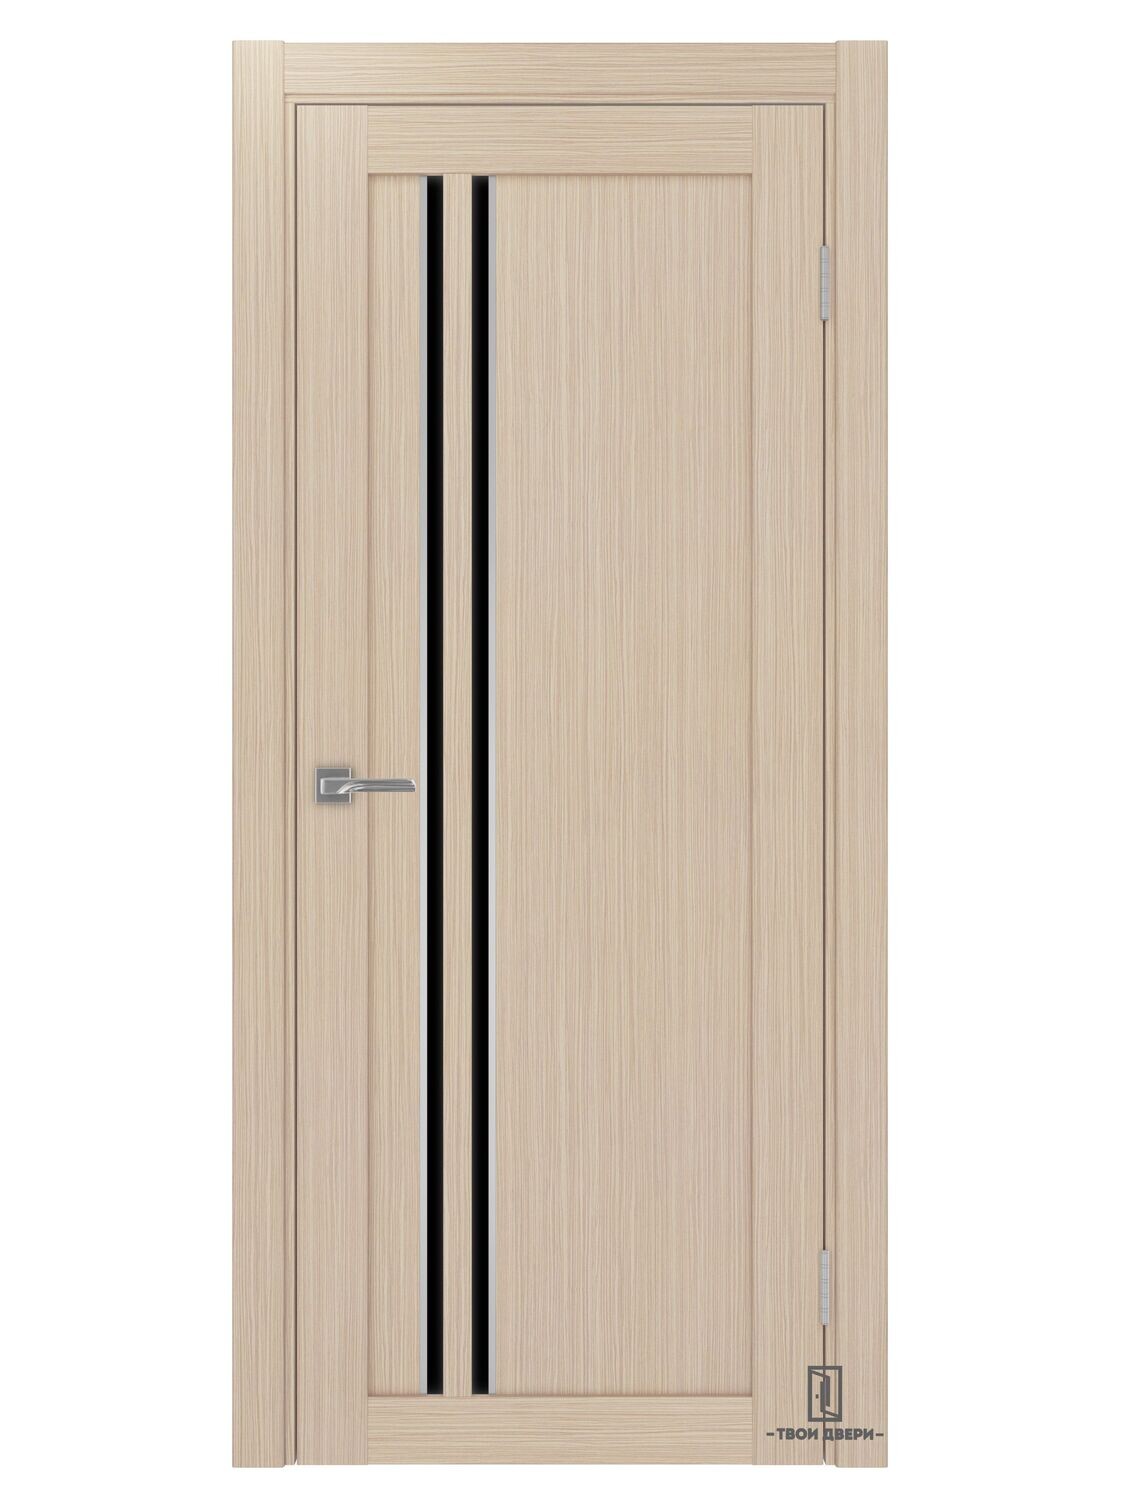 Дверь межкомнатная АПС 525 лакобель (молдинги), беленый дуб